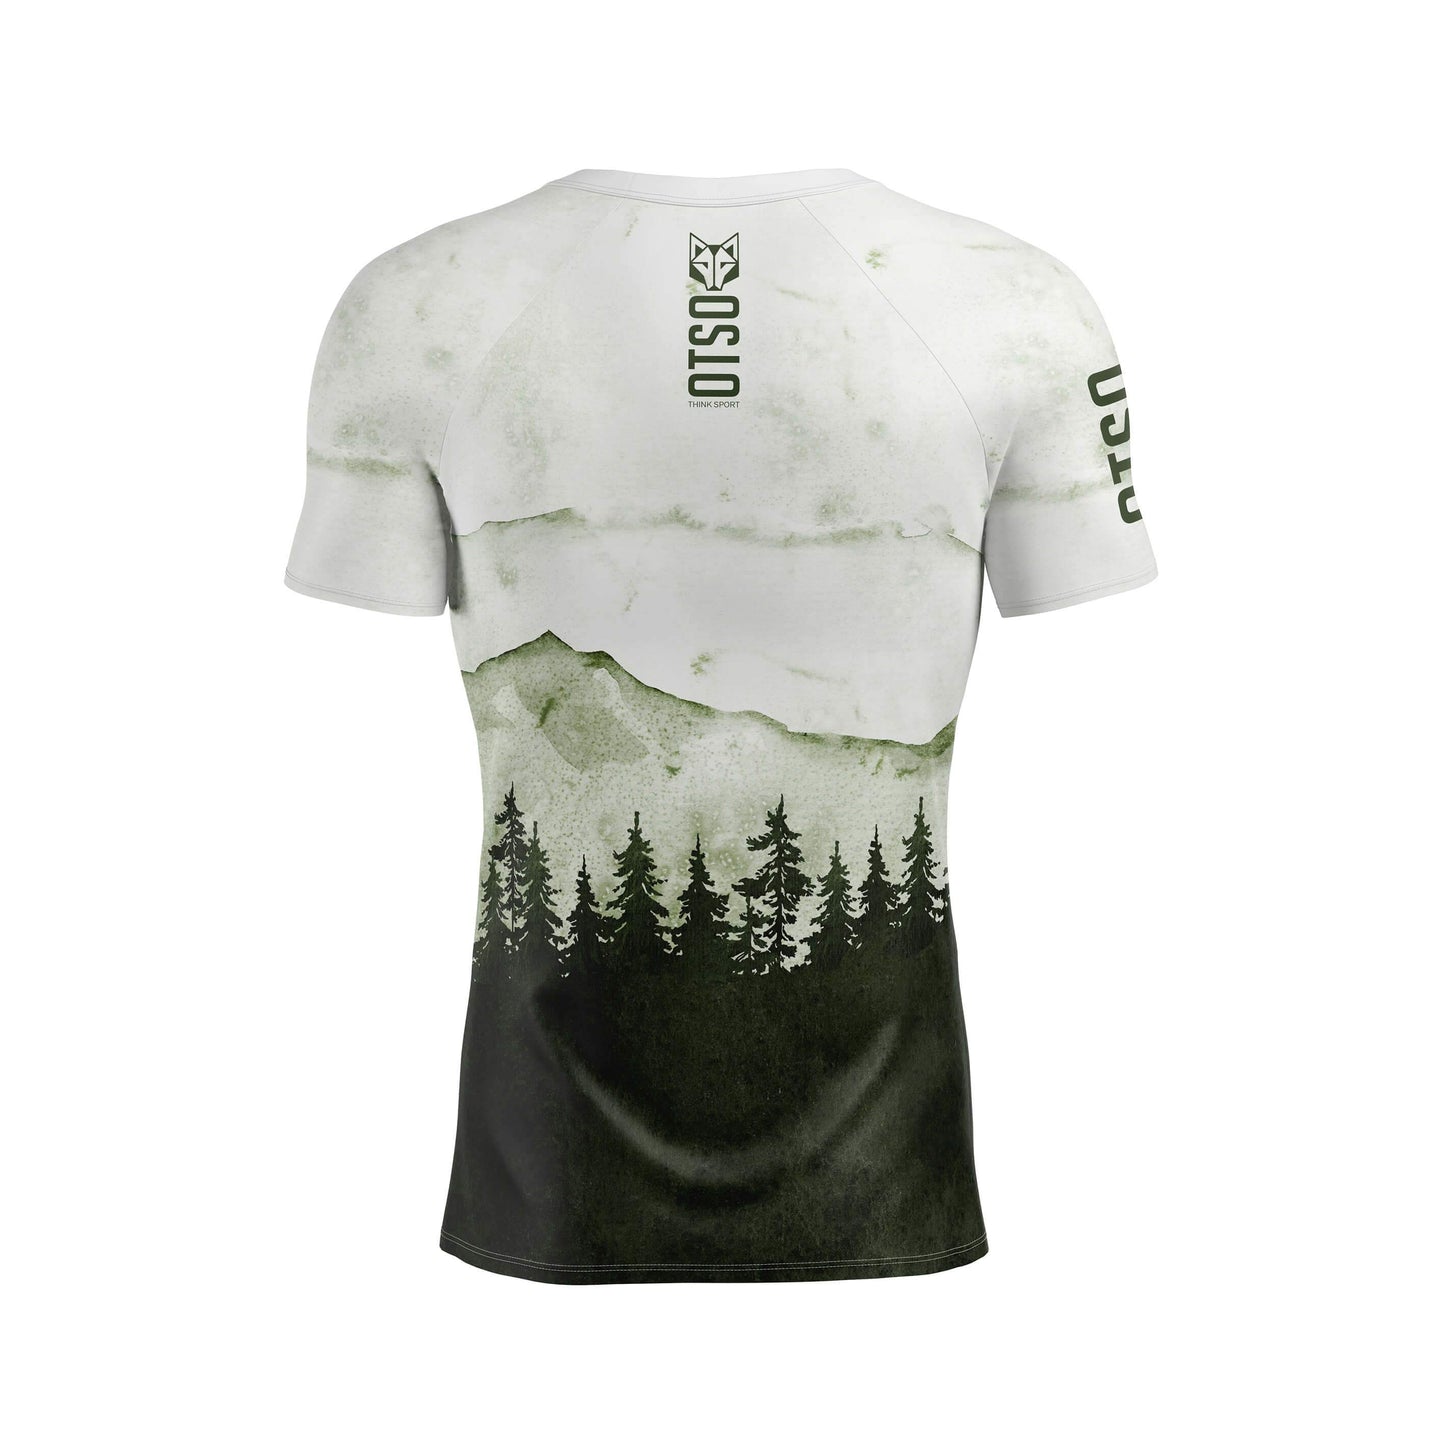 Camiseta de manga corta para hombre de la marca Otso con estampado Green Forest. Foto trasera